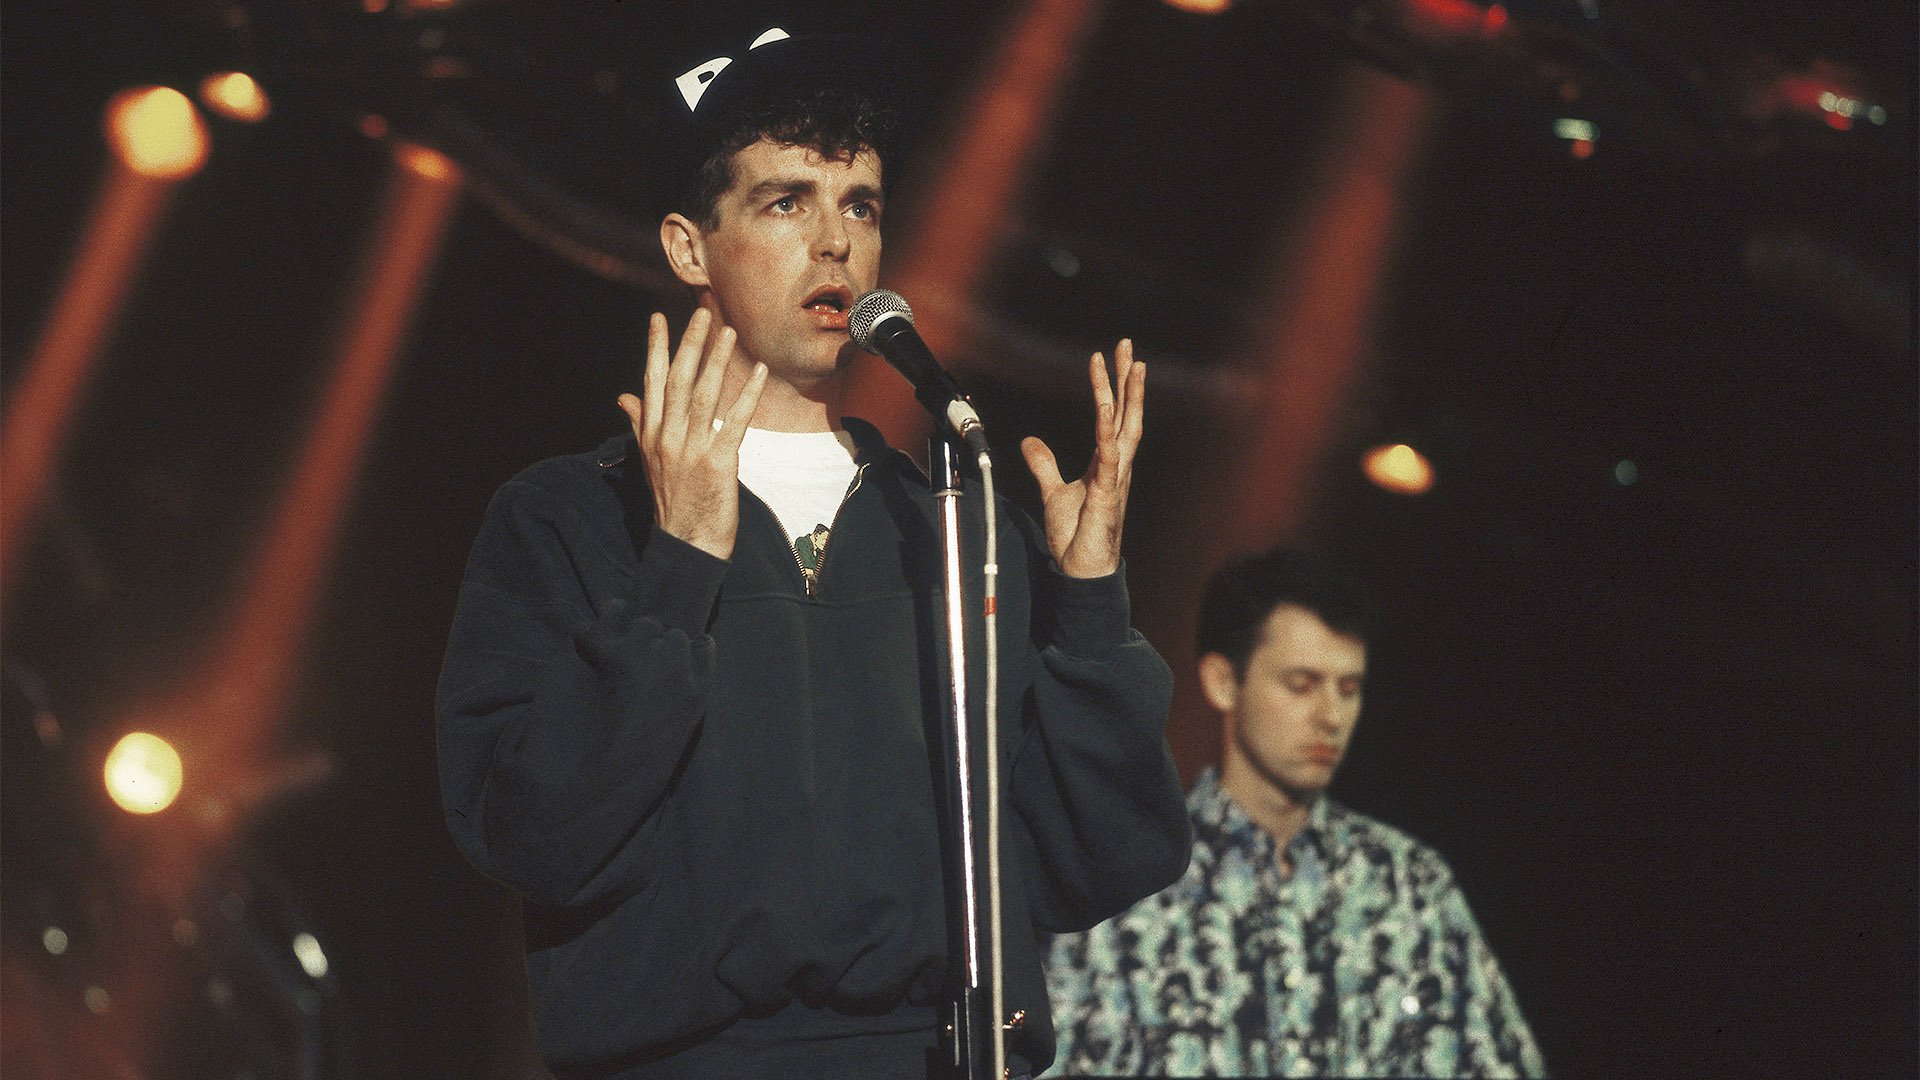 Вежливый человек: как вокалист Pet Shop Boys добился помилования для  гениального математика | Статьи | Известия